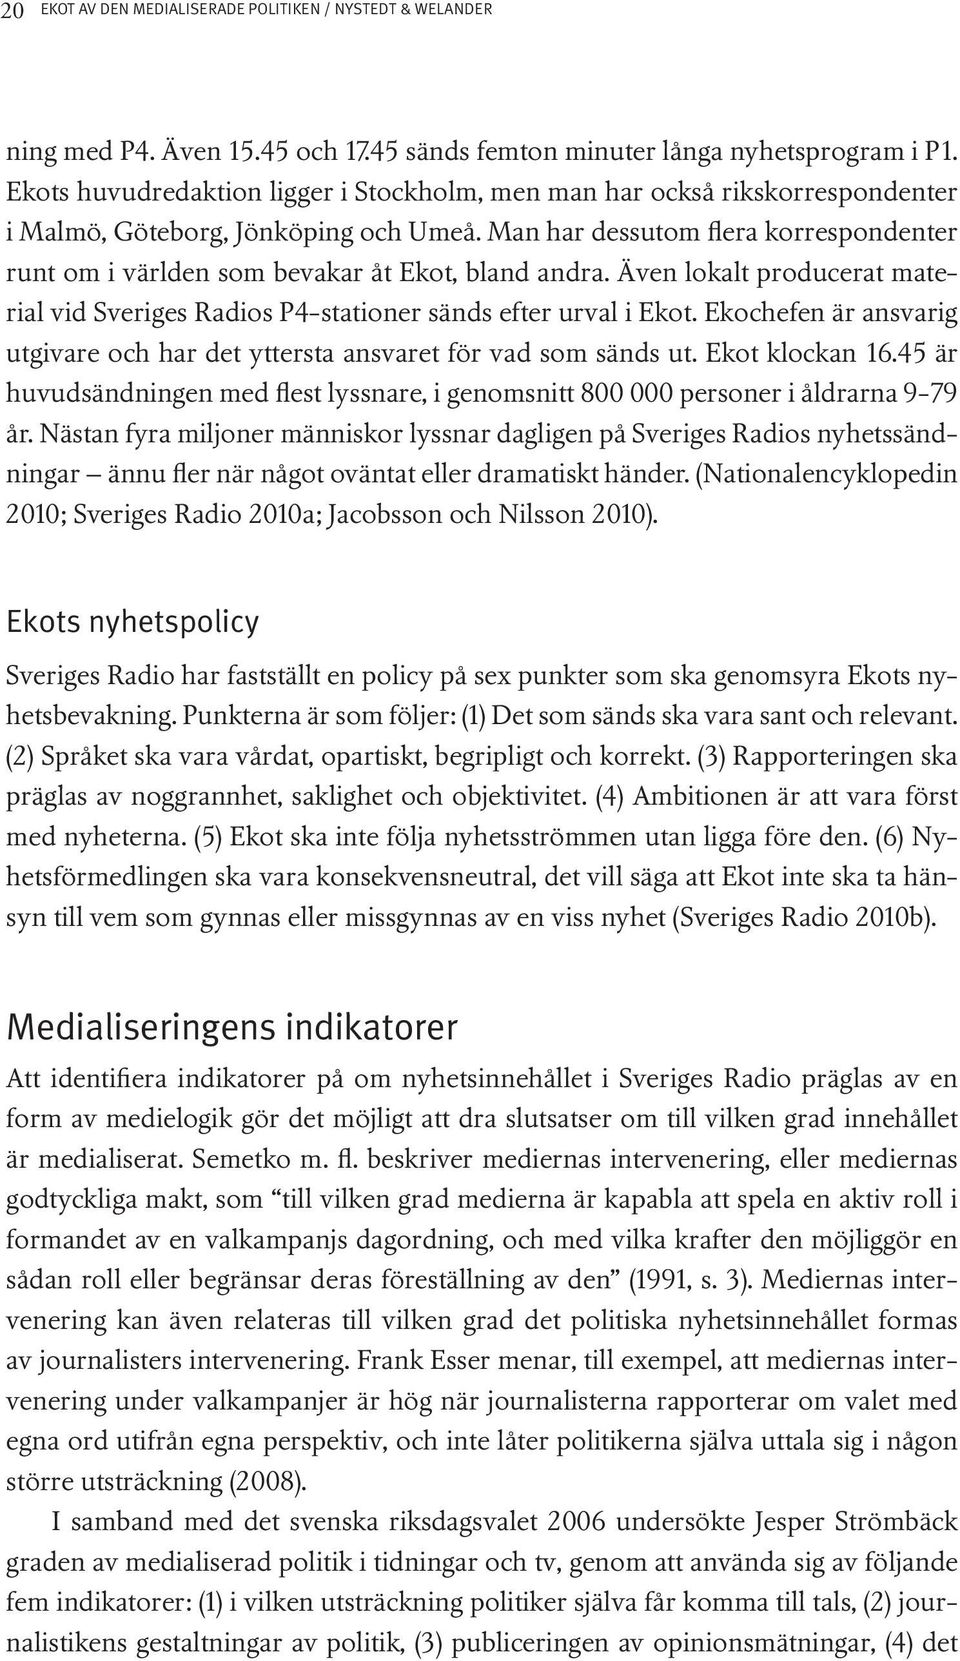 Man har dessutom flera korrespondenter runt om i världen som bevakar åt Ekot, bland andra. Även lokalt producerat material vid Sveriges Radios P4-stationer sänds efter urval i Ekot.